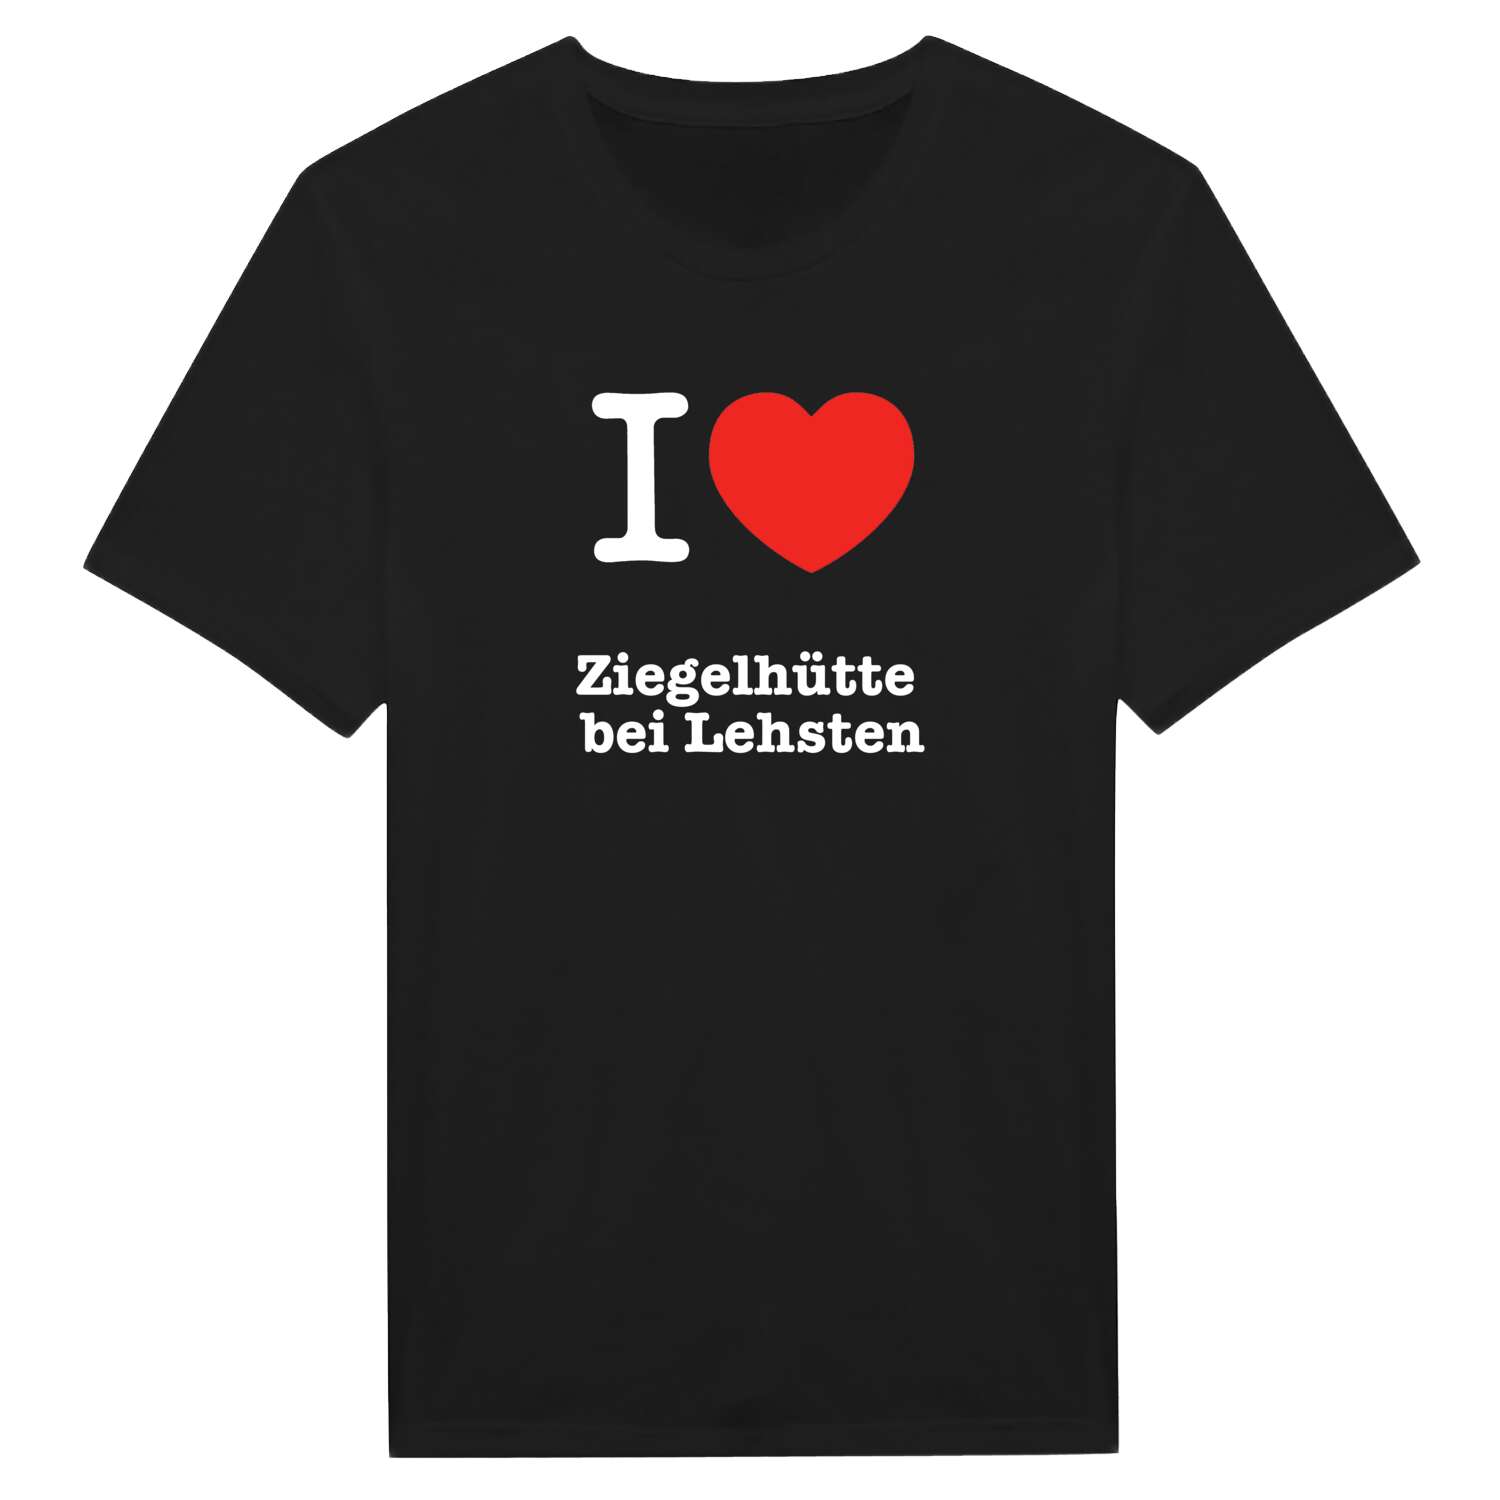 Ziegelhütte bei Lehsten T-Shirt »I love«